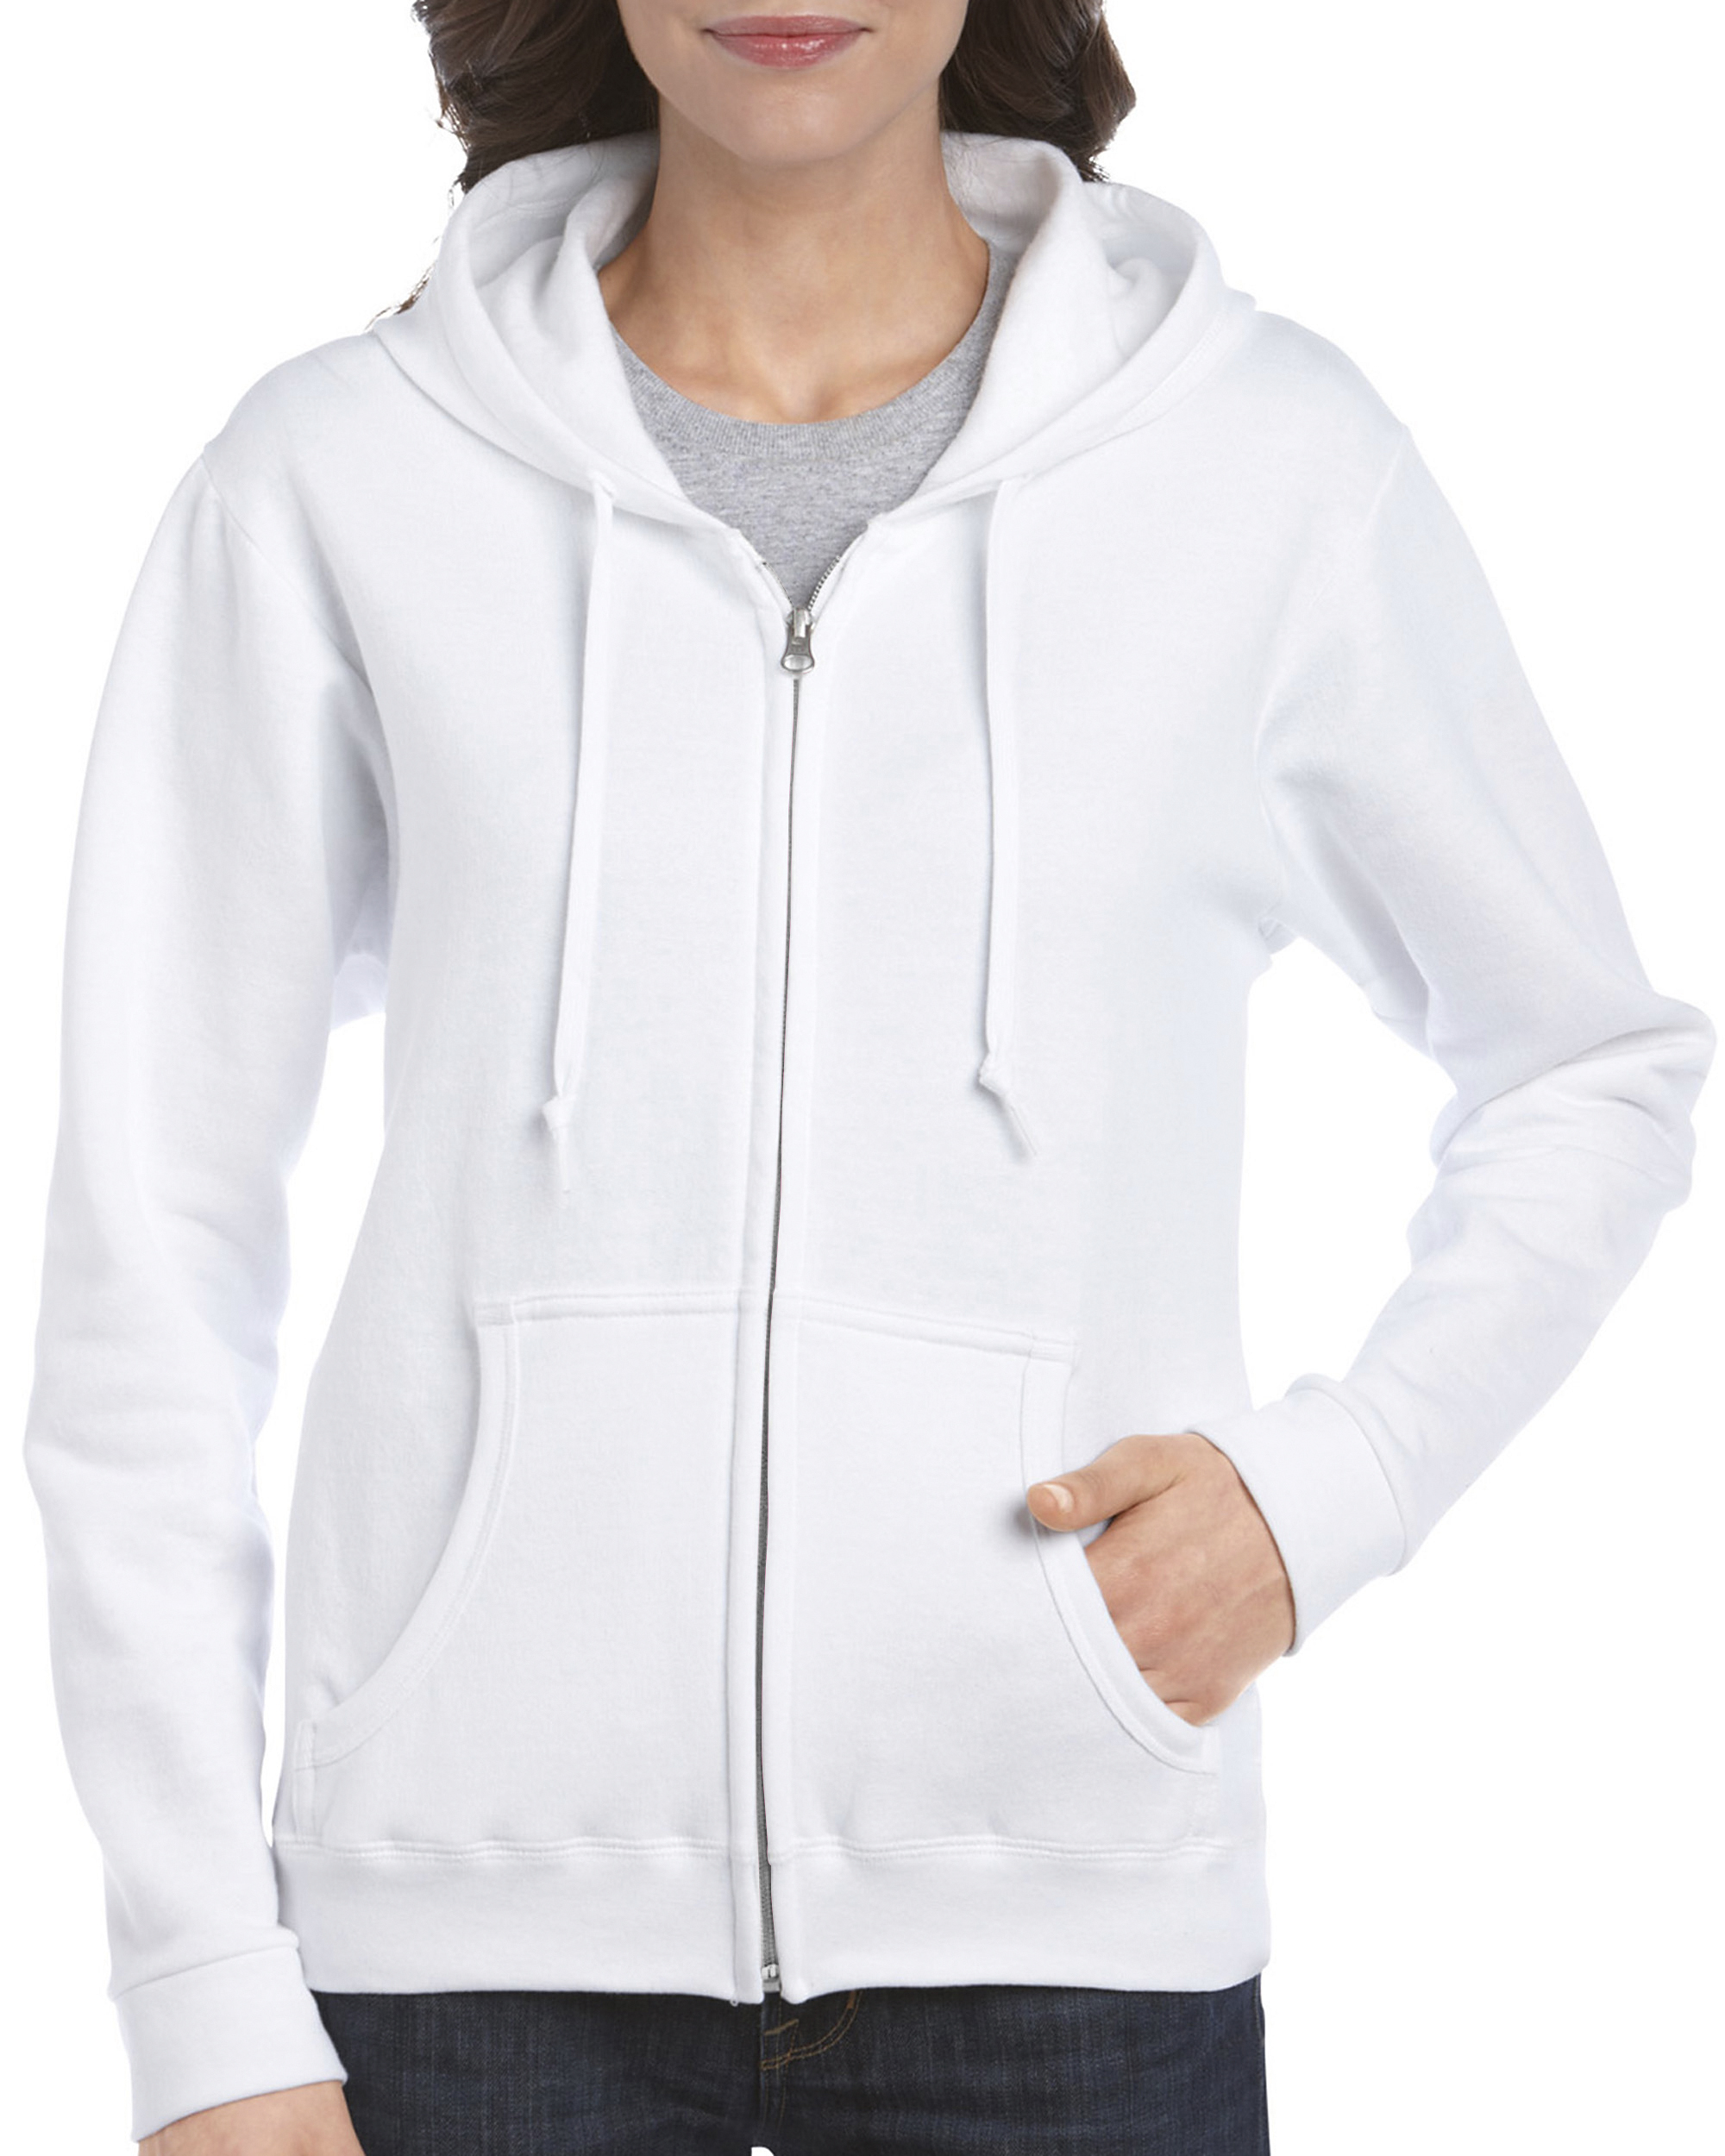 GD092 - Heavy Blend™ Ladies Full Zip Hooded Sweatshirt - One Stop